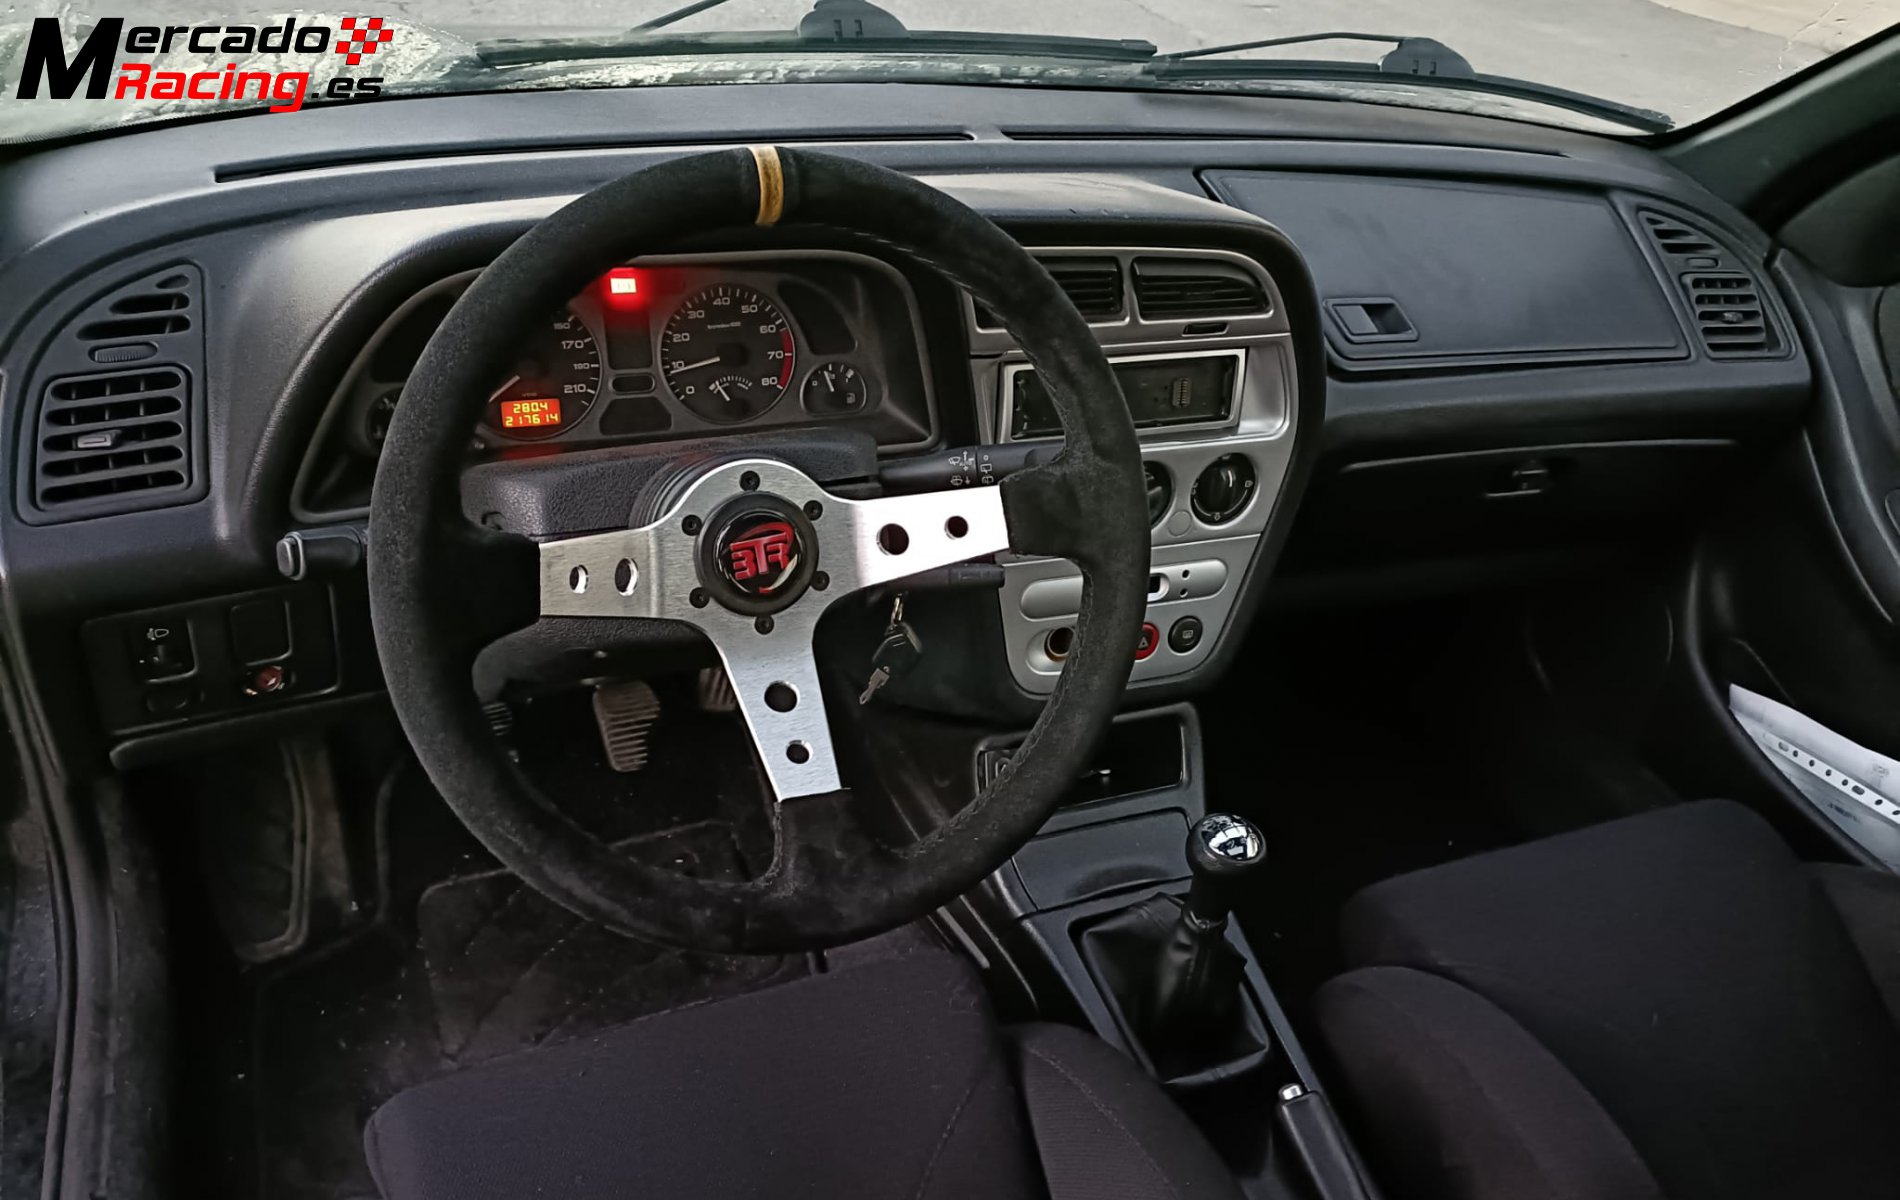 Peugeot 306 maxi